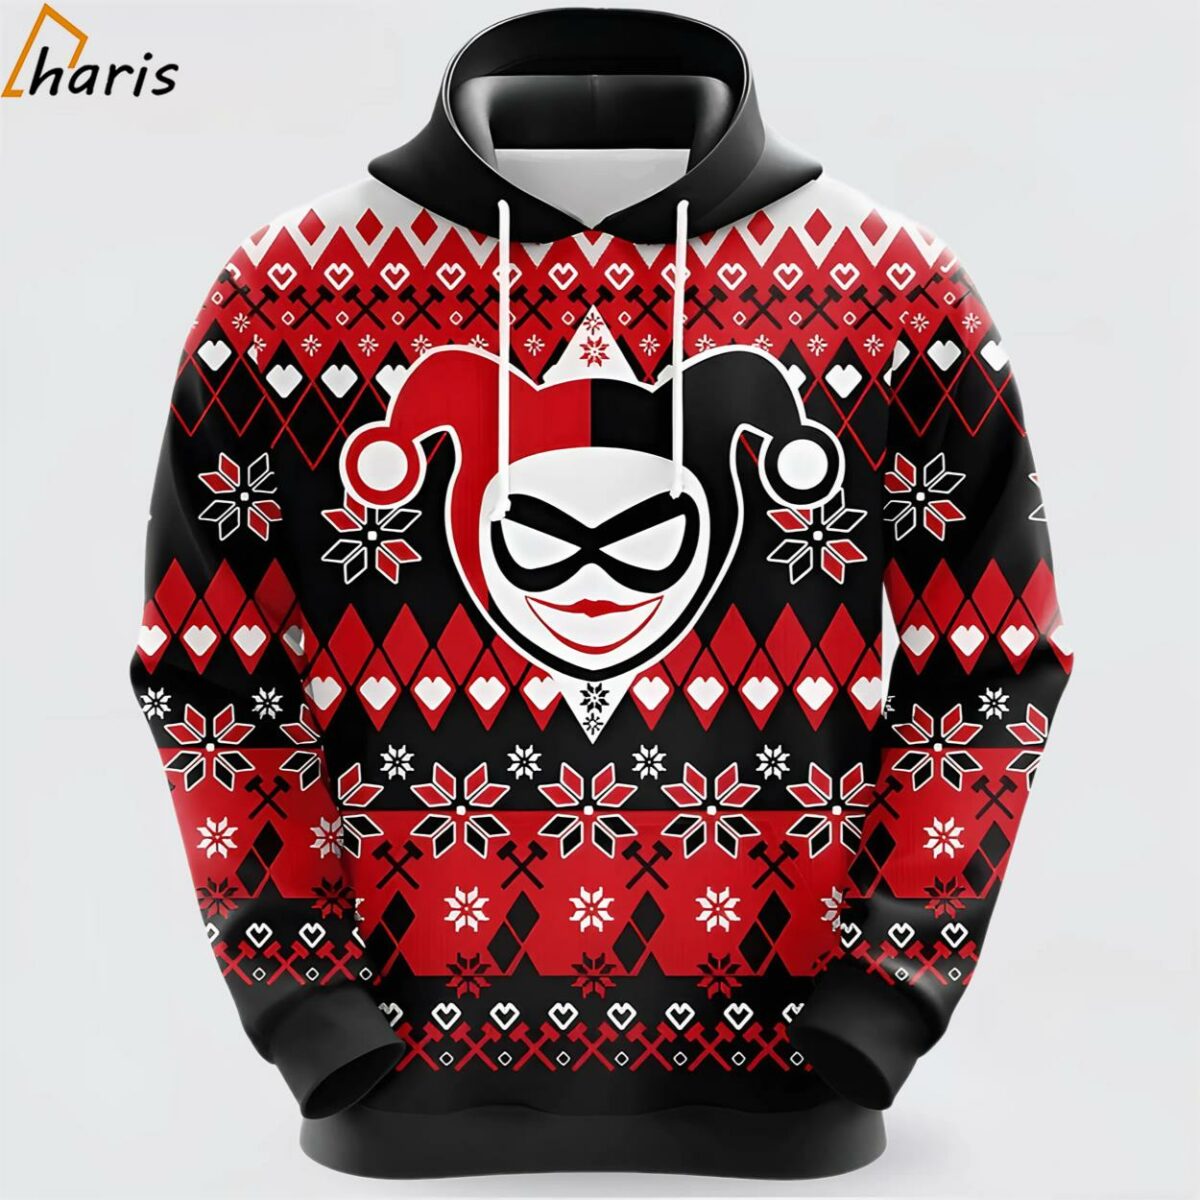 Harley Quinn Christmas Pattern Black Red 3D Hoodie 1 jersey